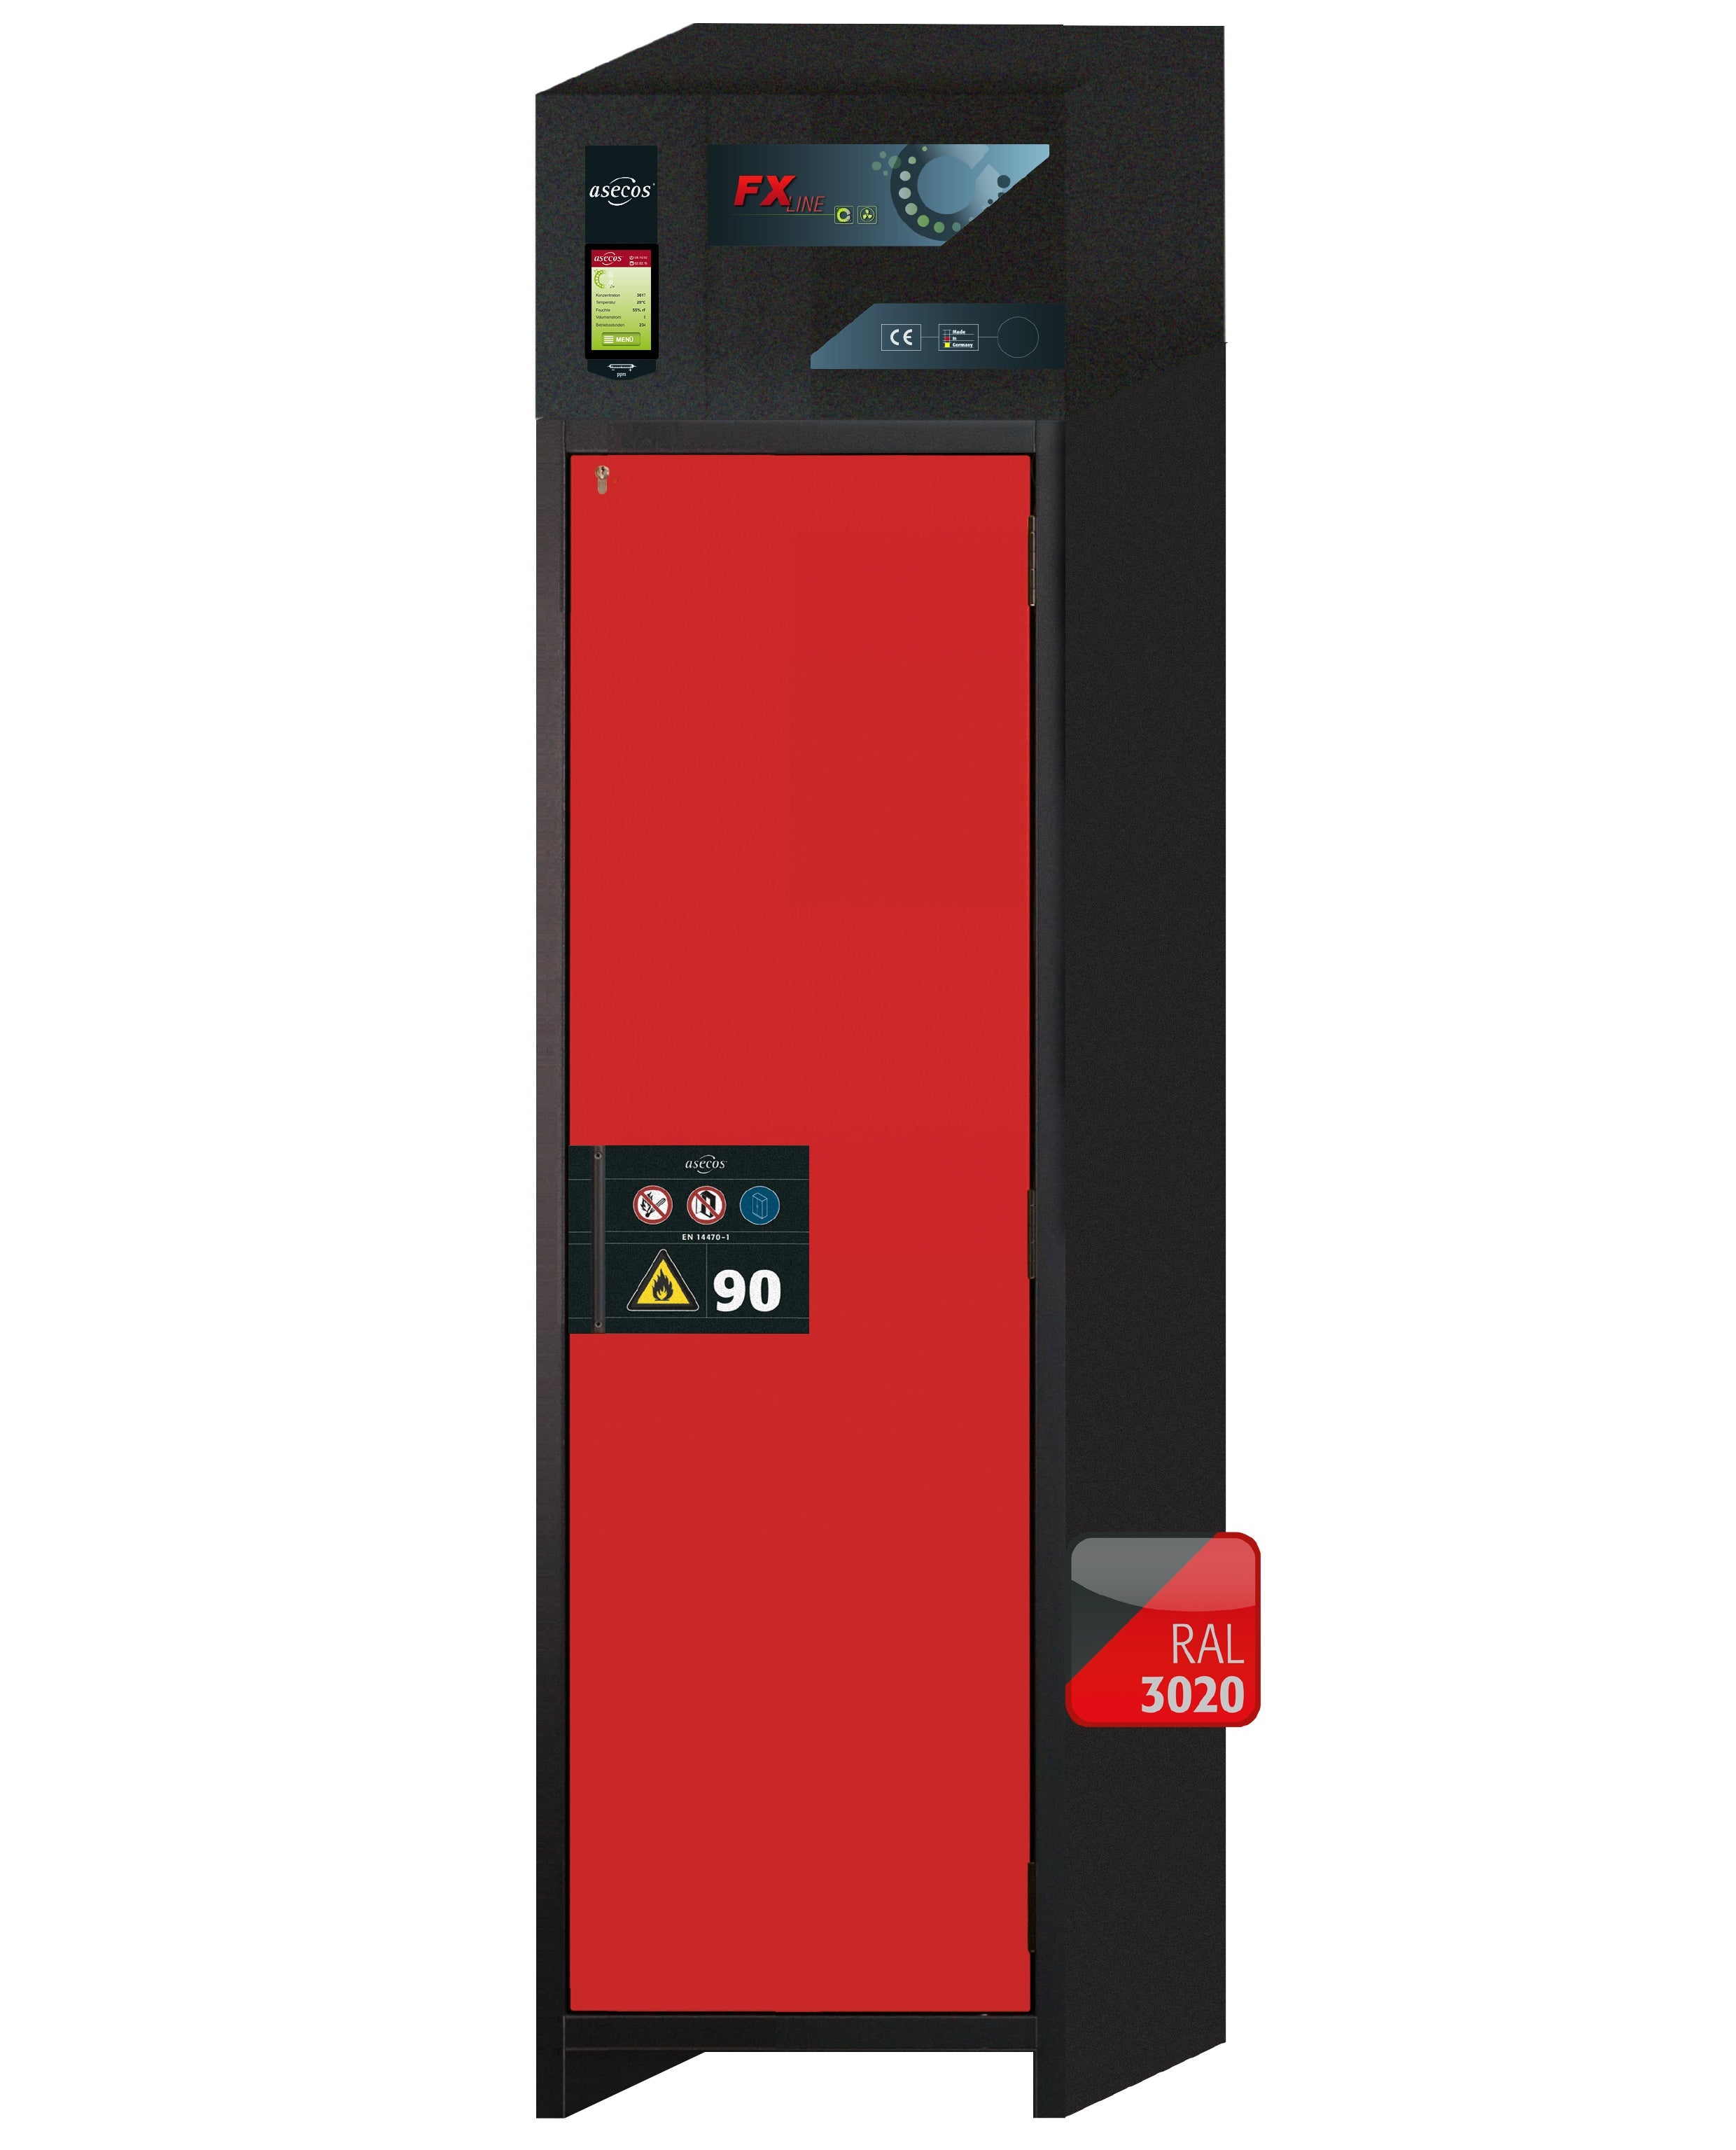 Armoire de filtration d'air recyclé type 90 FX-PEGASUS-90 modèle FX90.229.060.WDACR en rouge signalisation RAL 3020 avec 2 étagères standard (tôle d'acier)